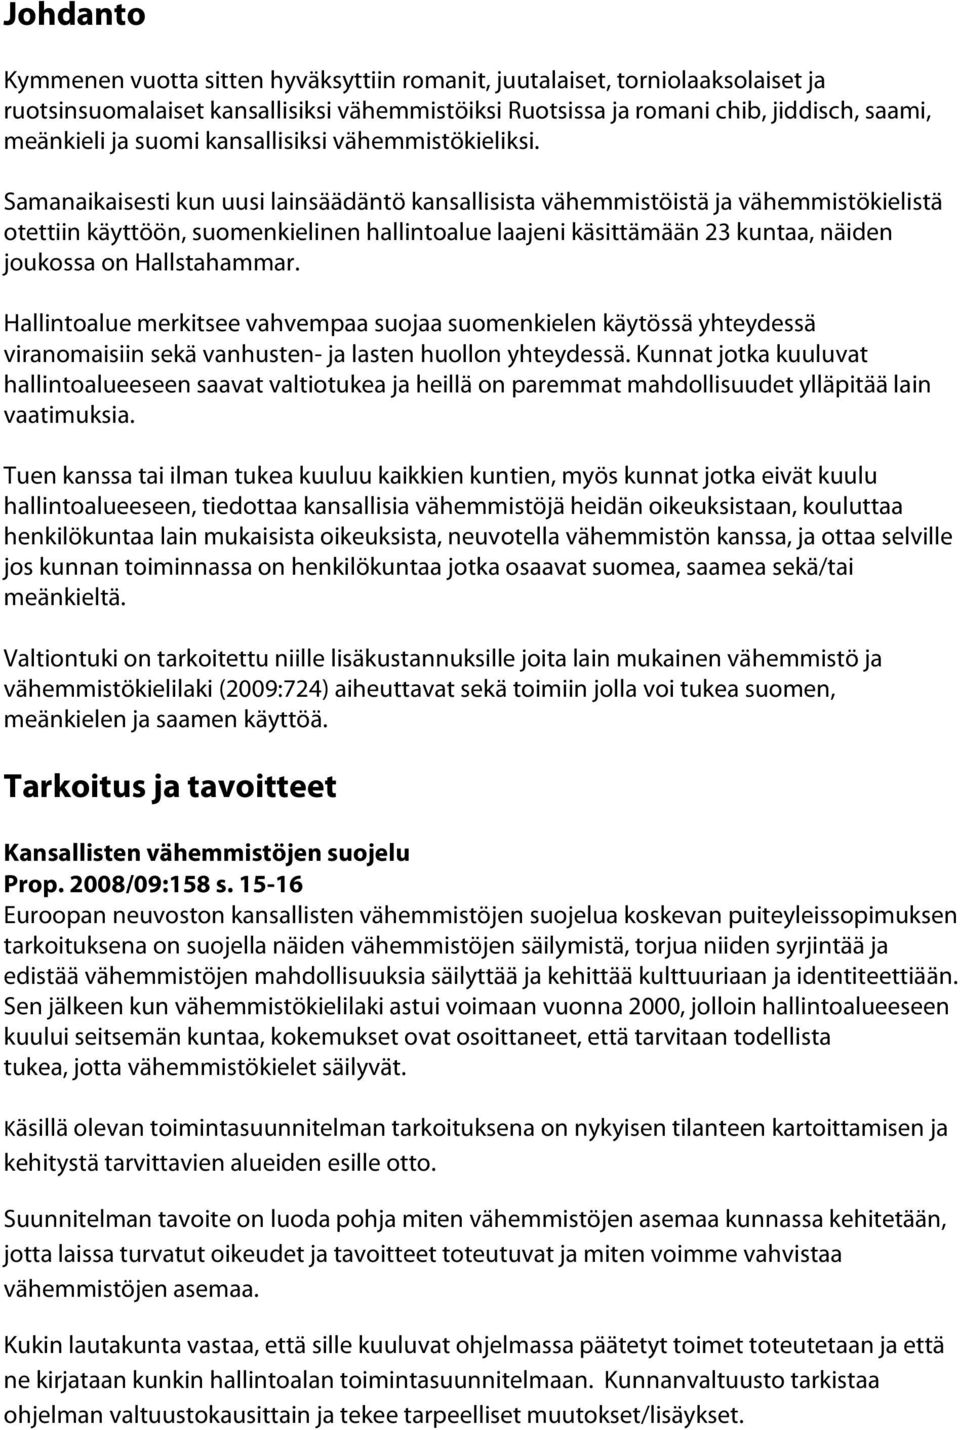 Samanaikaisesti kun uusi lainsäädäntö kansallisista vähemmistöistä ja vähemmistökielistä otettiin käyttöön, suomenkielinen hallintoalue laajeni käsittämään 23 kuntaa, näiden joukossa on Hallstahammar.